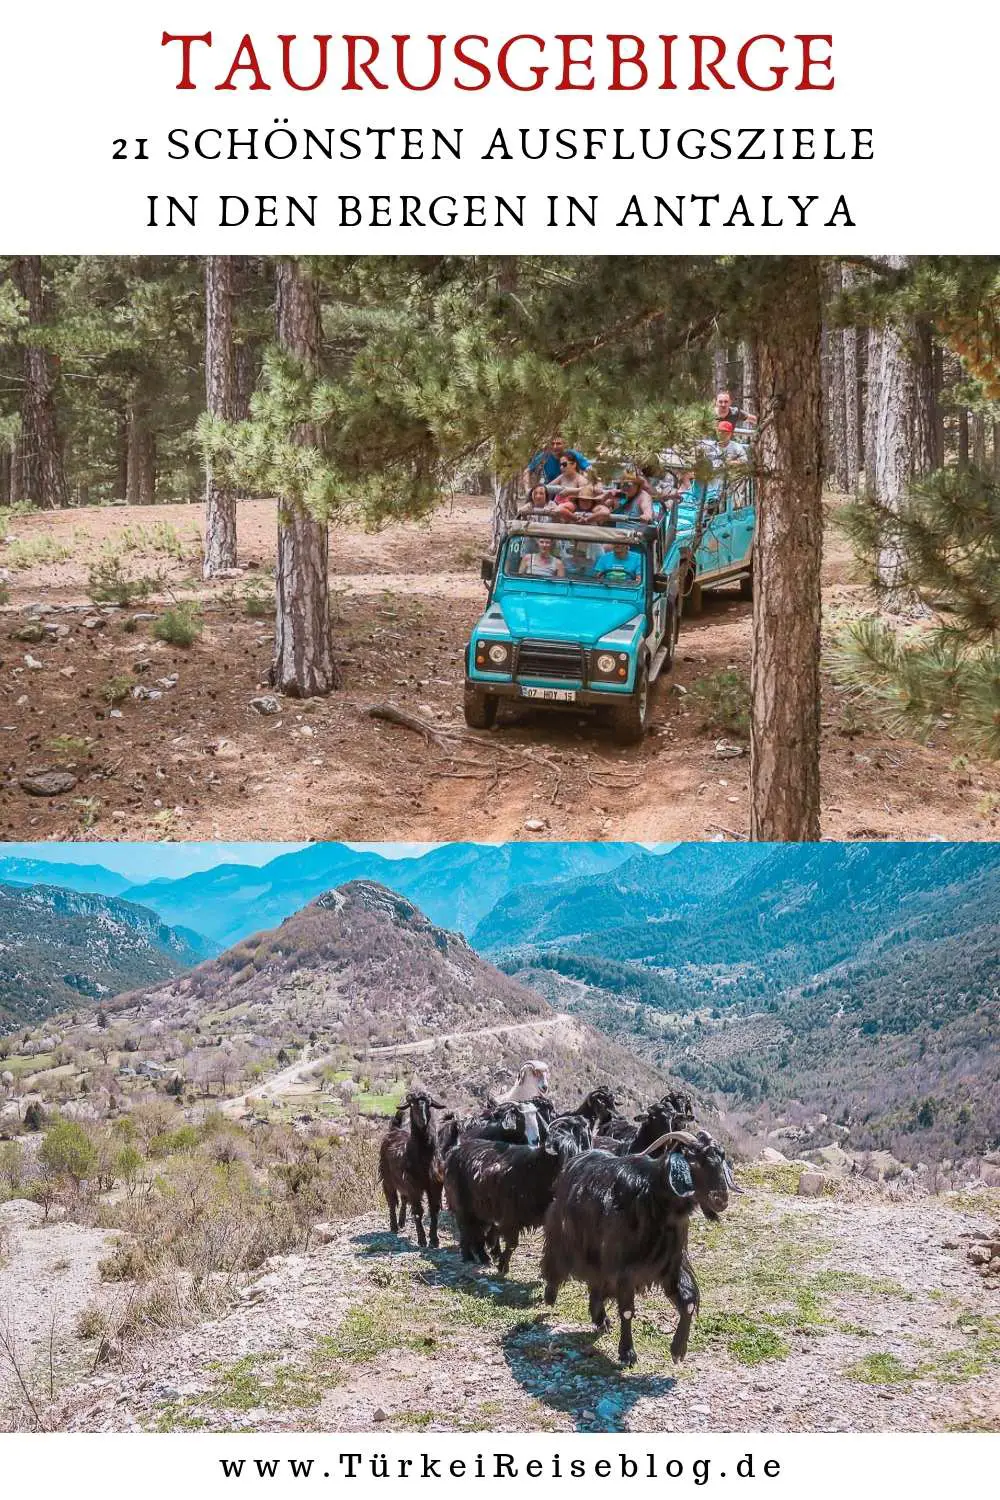 Taurusgebirge in der Türkei: 21 schönsten Ausflugsziele in den Bergen!